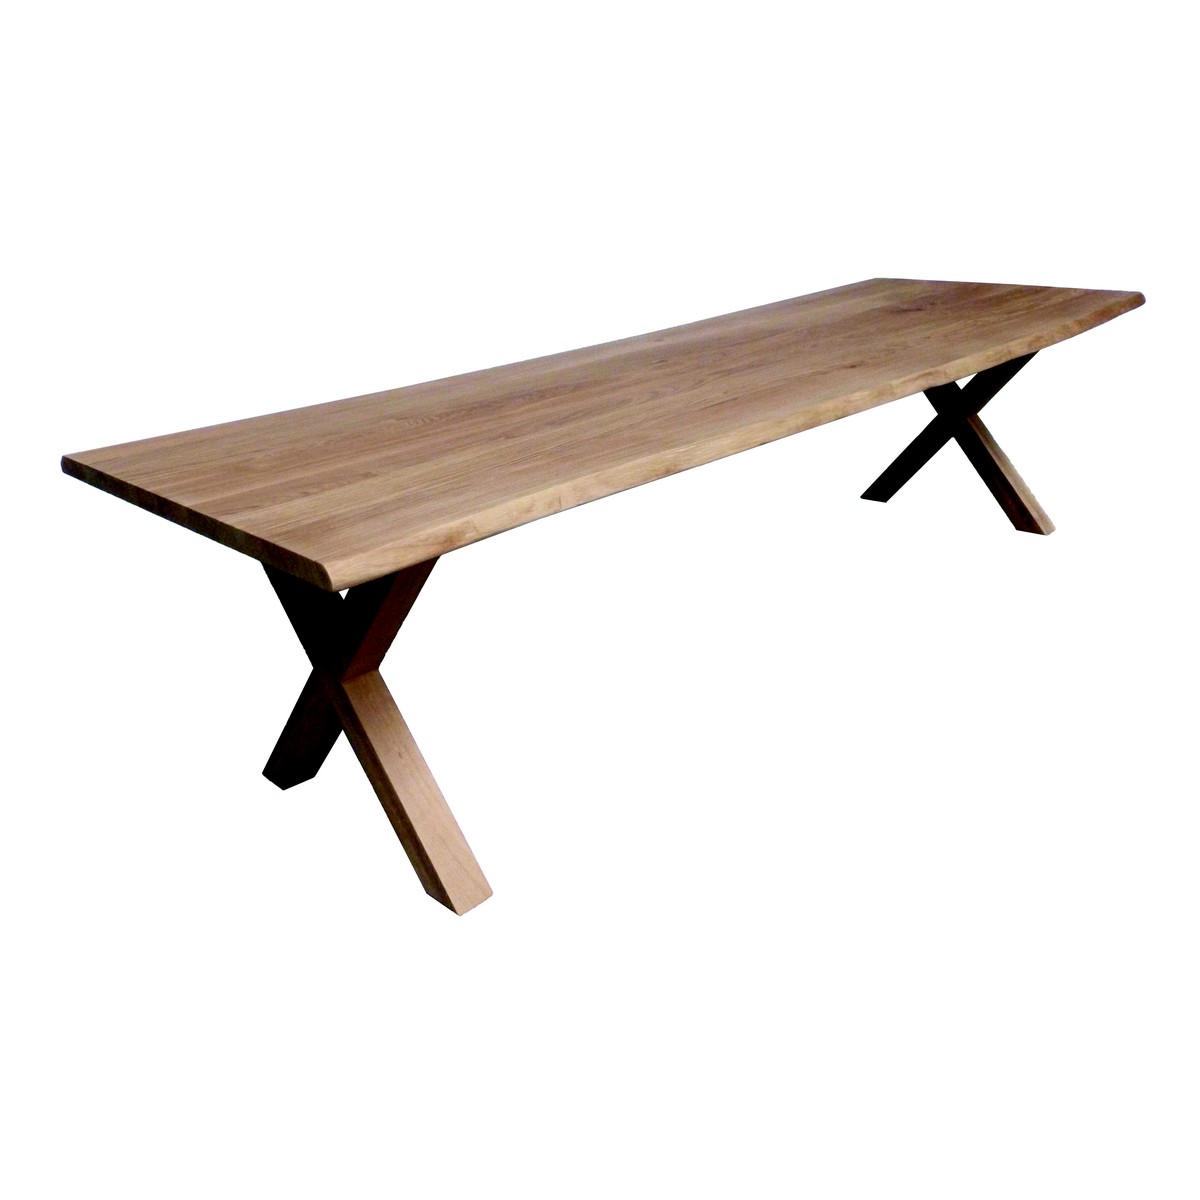   Table de bar Elmo Trunk rectangulaire  160x100x110cm